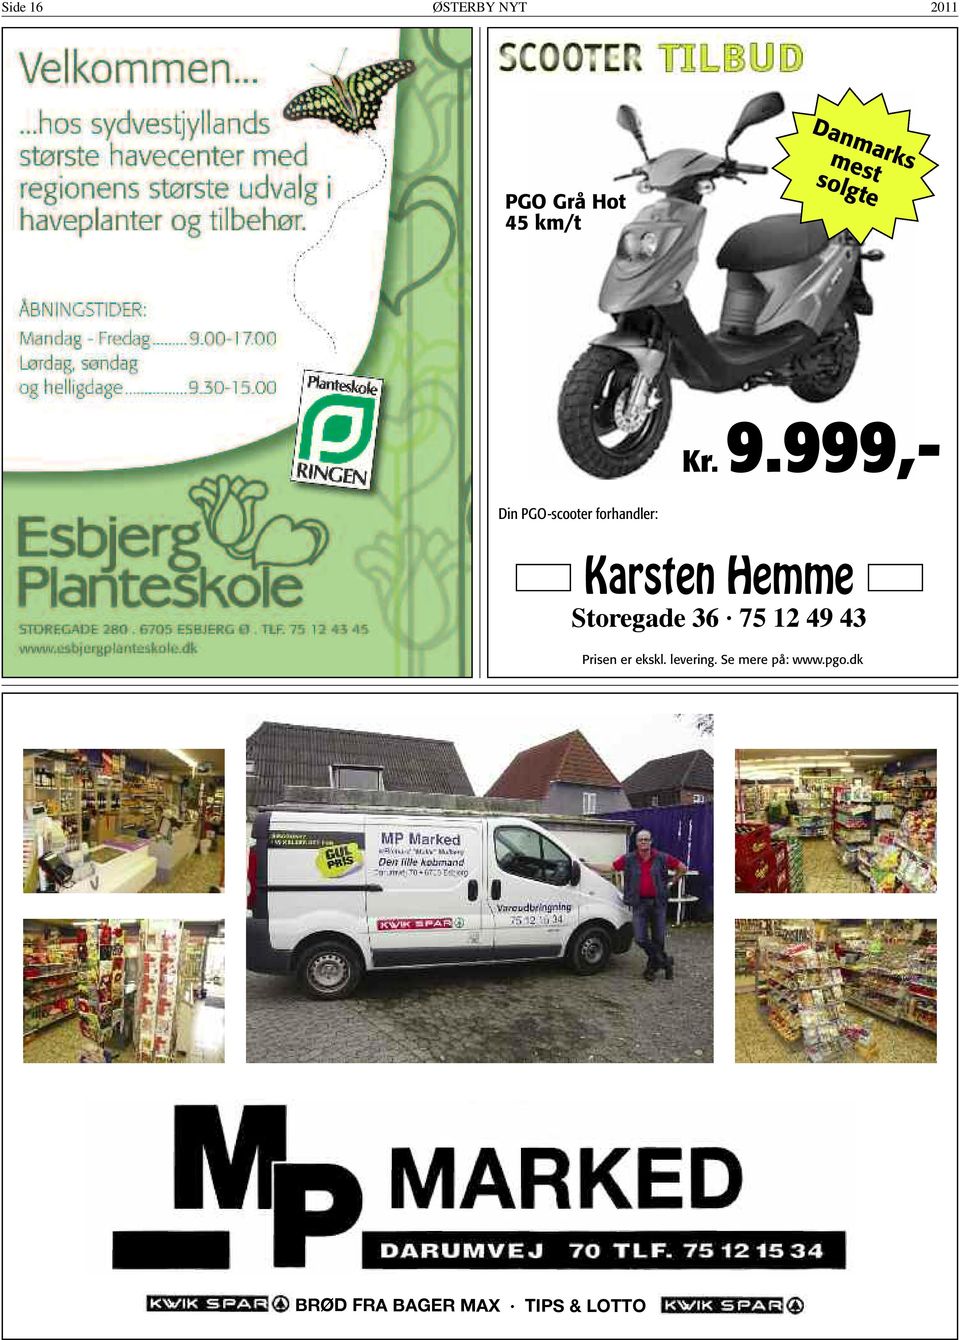 999,- Din PGO-scooter forhandler: Karsten Hemme